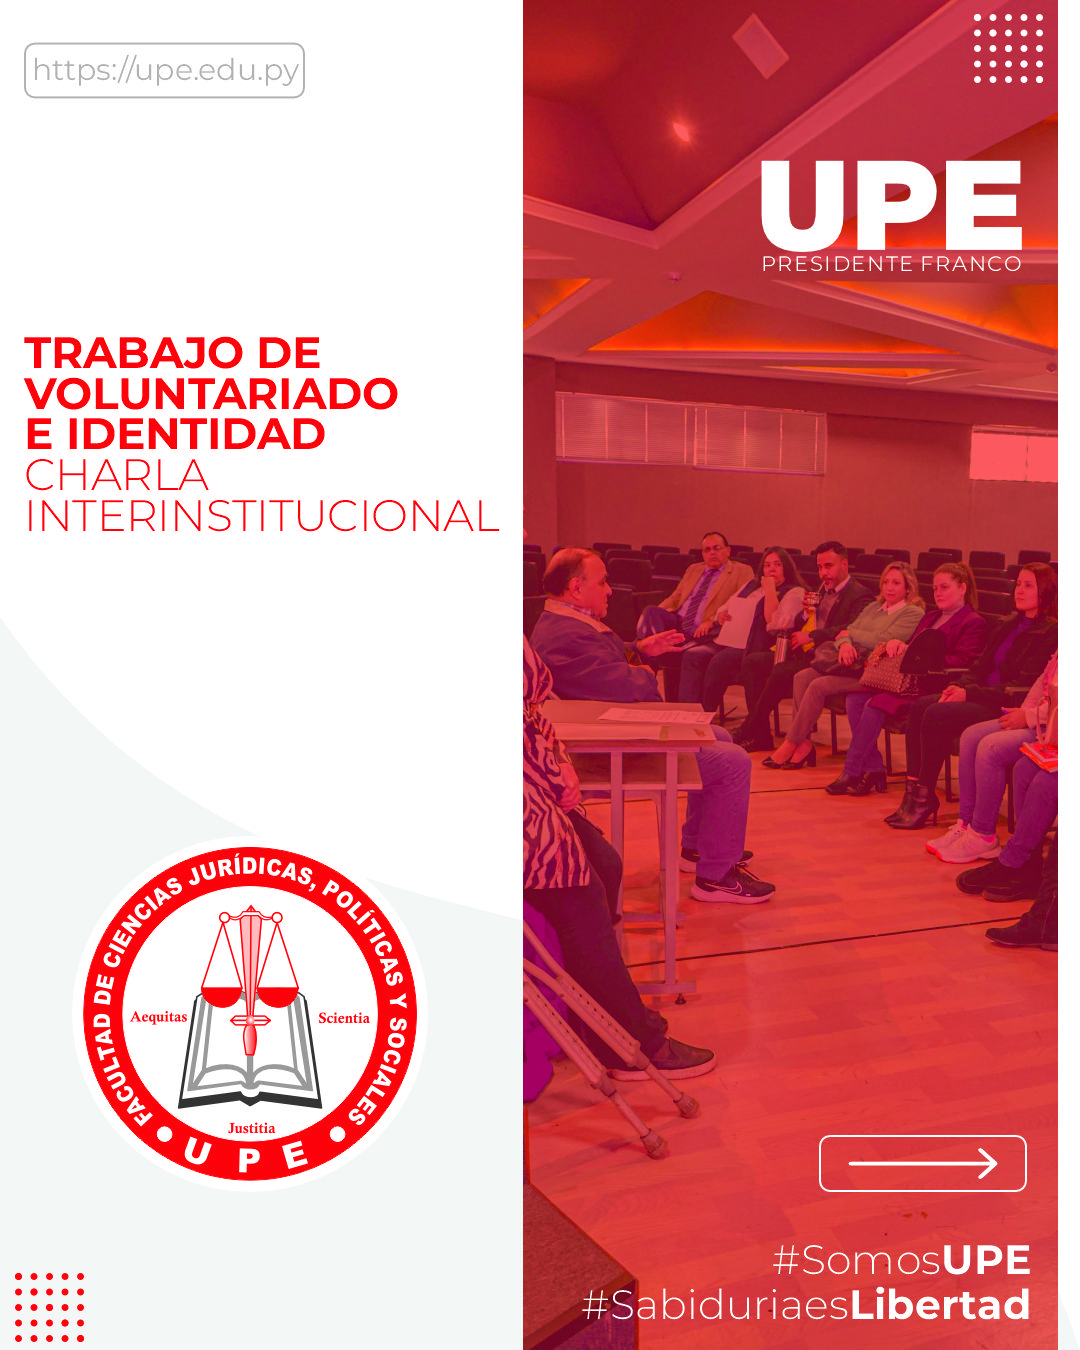 Voluntariado e Identidad: Charla Interinstitucional en la UPE